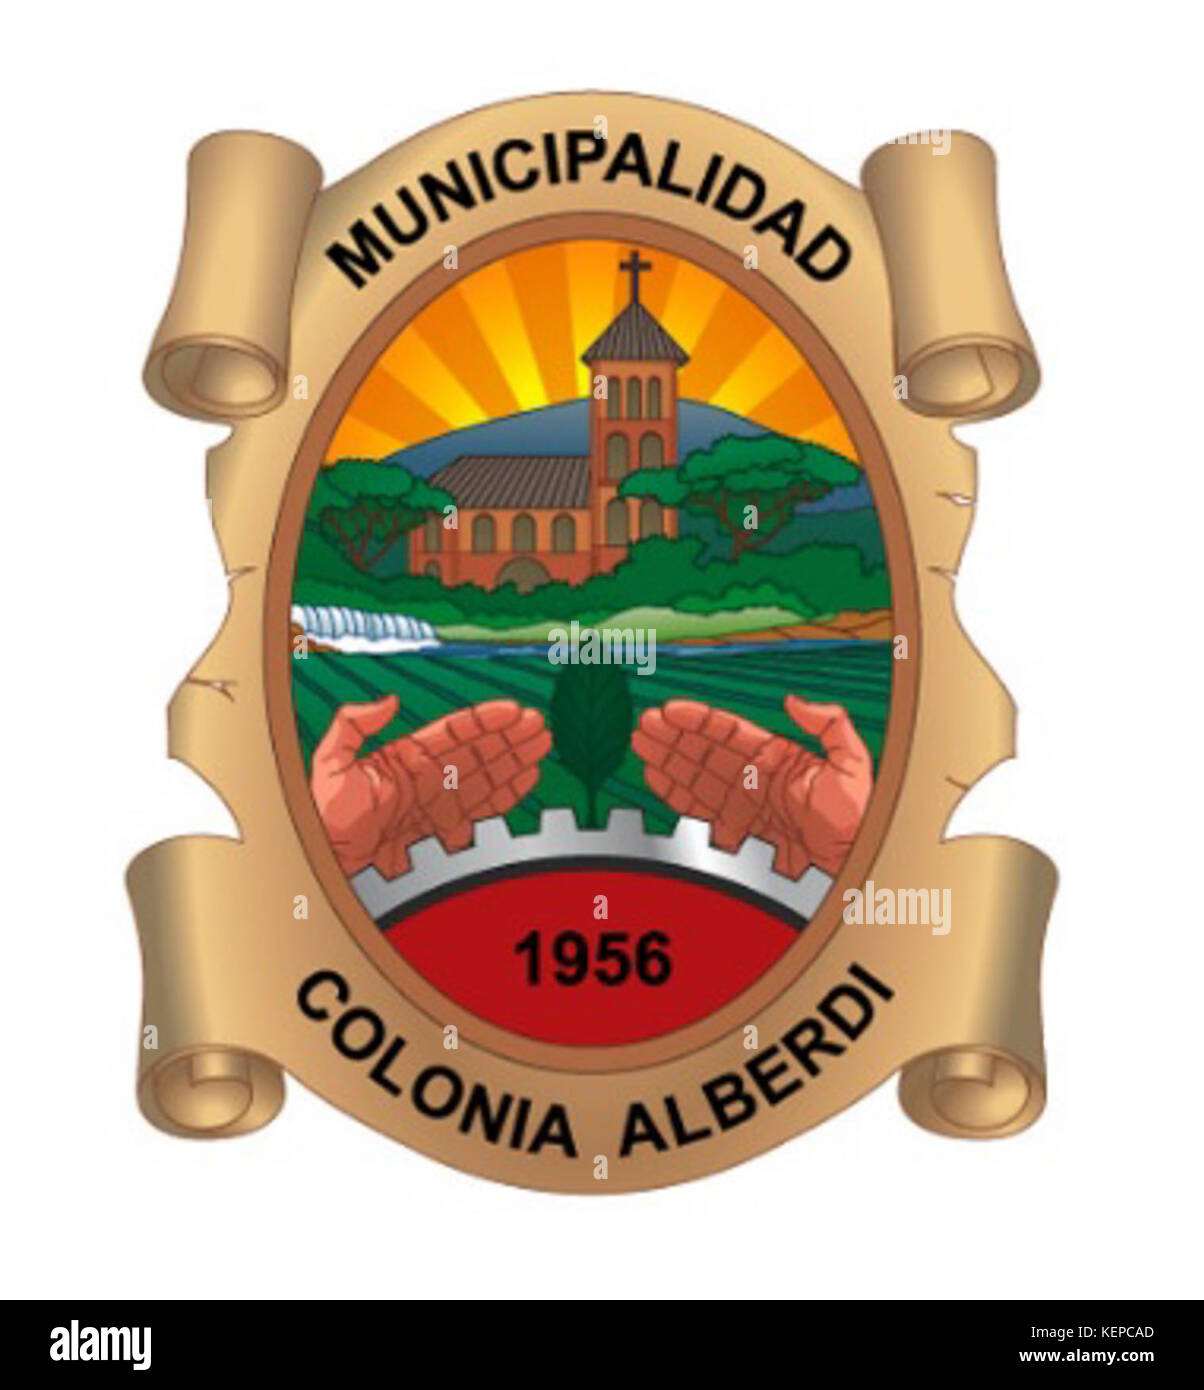 Municipalidad de Colonia Alberdi Stock Photo